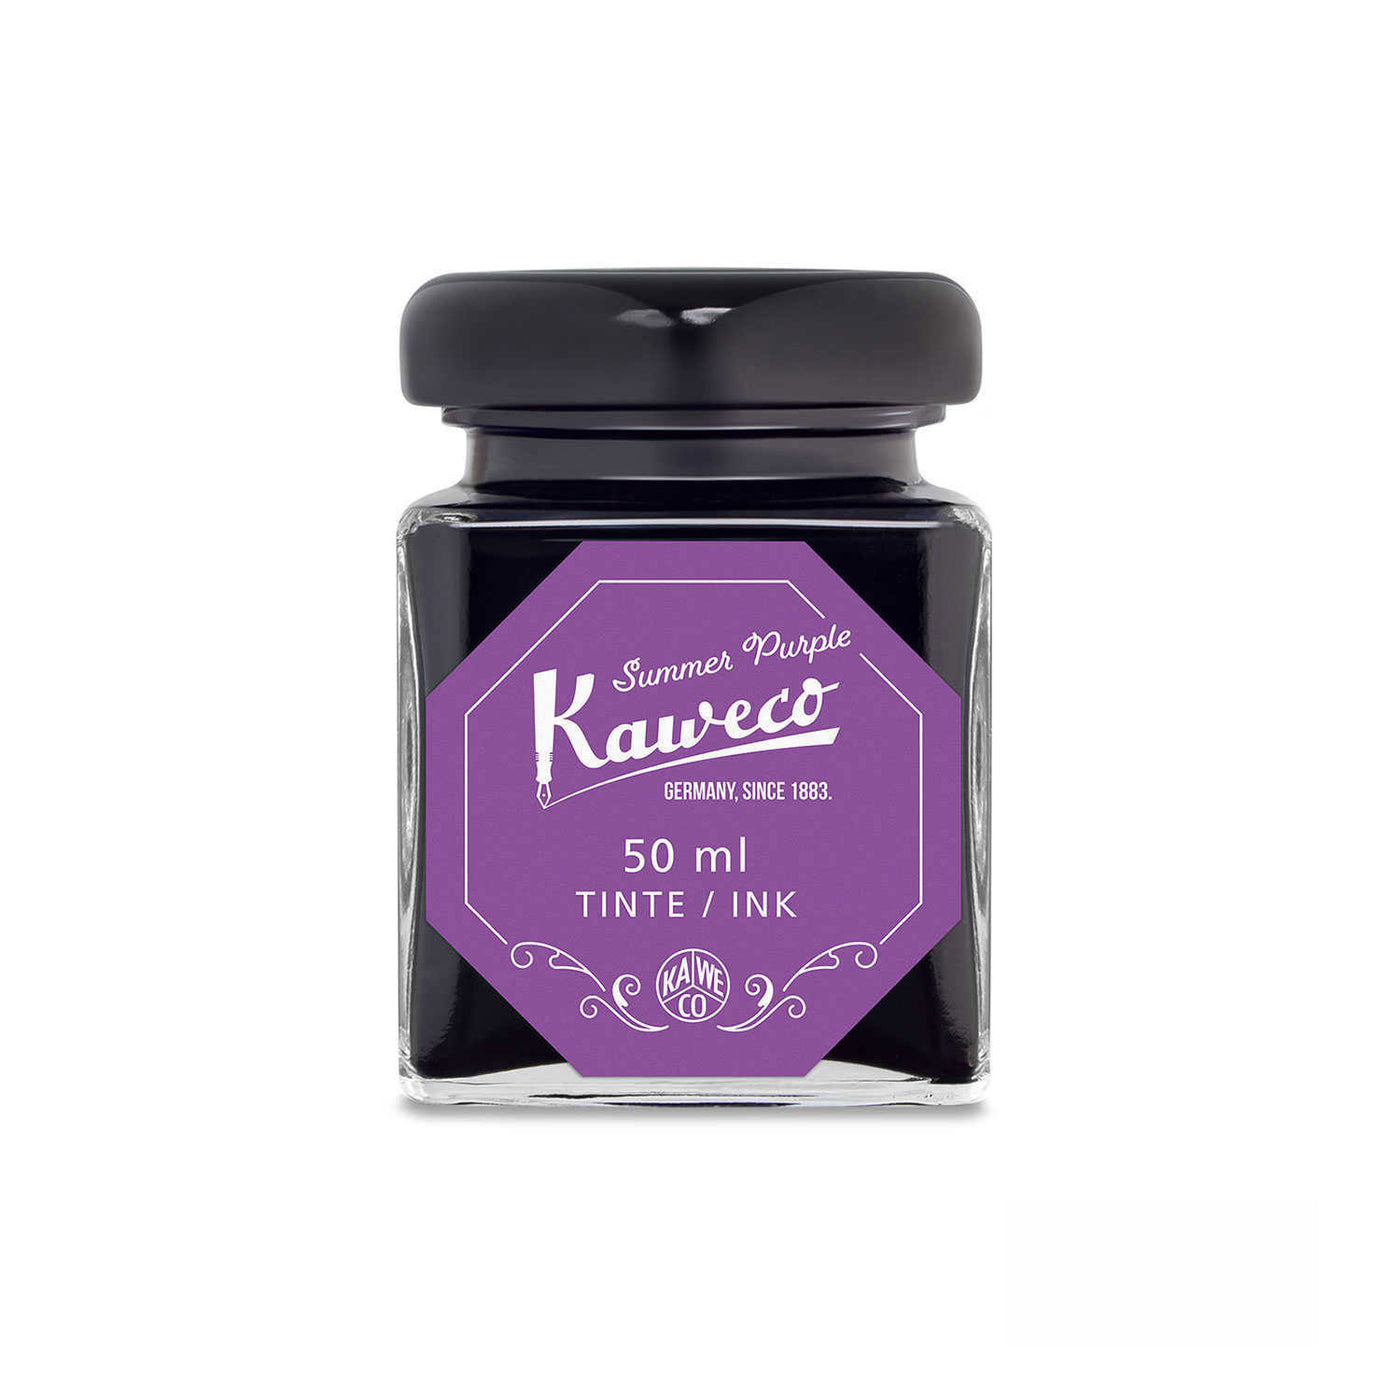 Kaweco Standard Ink Bottle, Summer Purple - 50ml